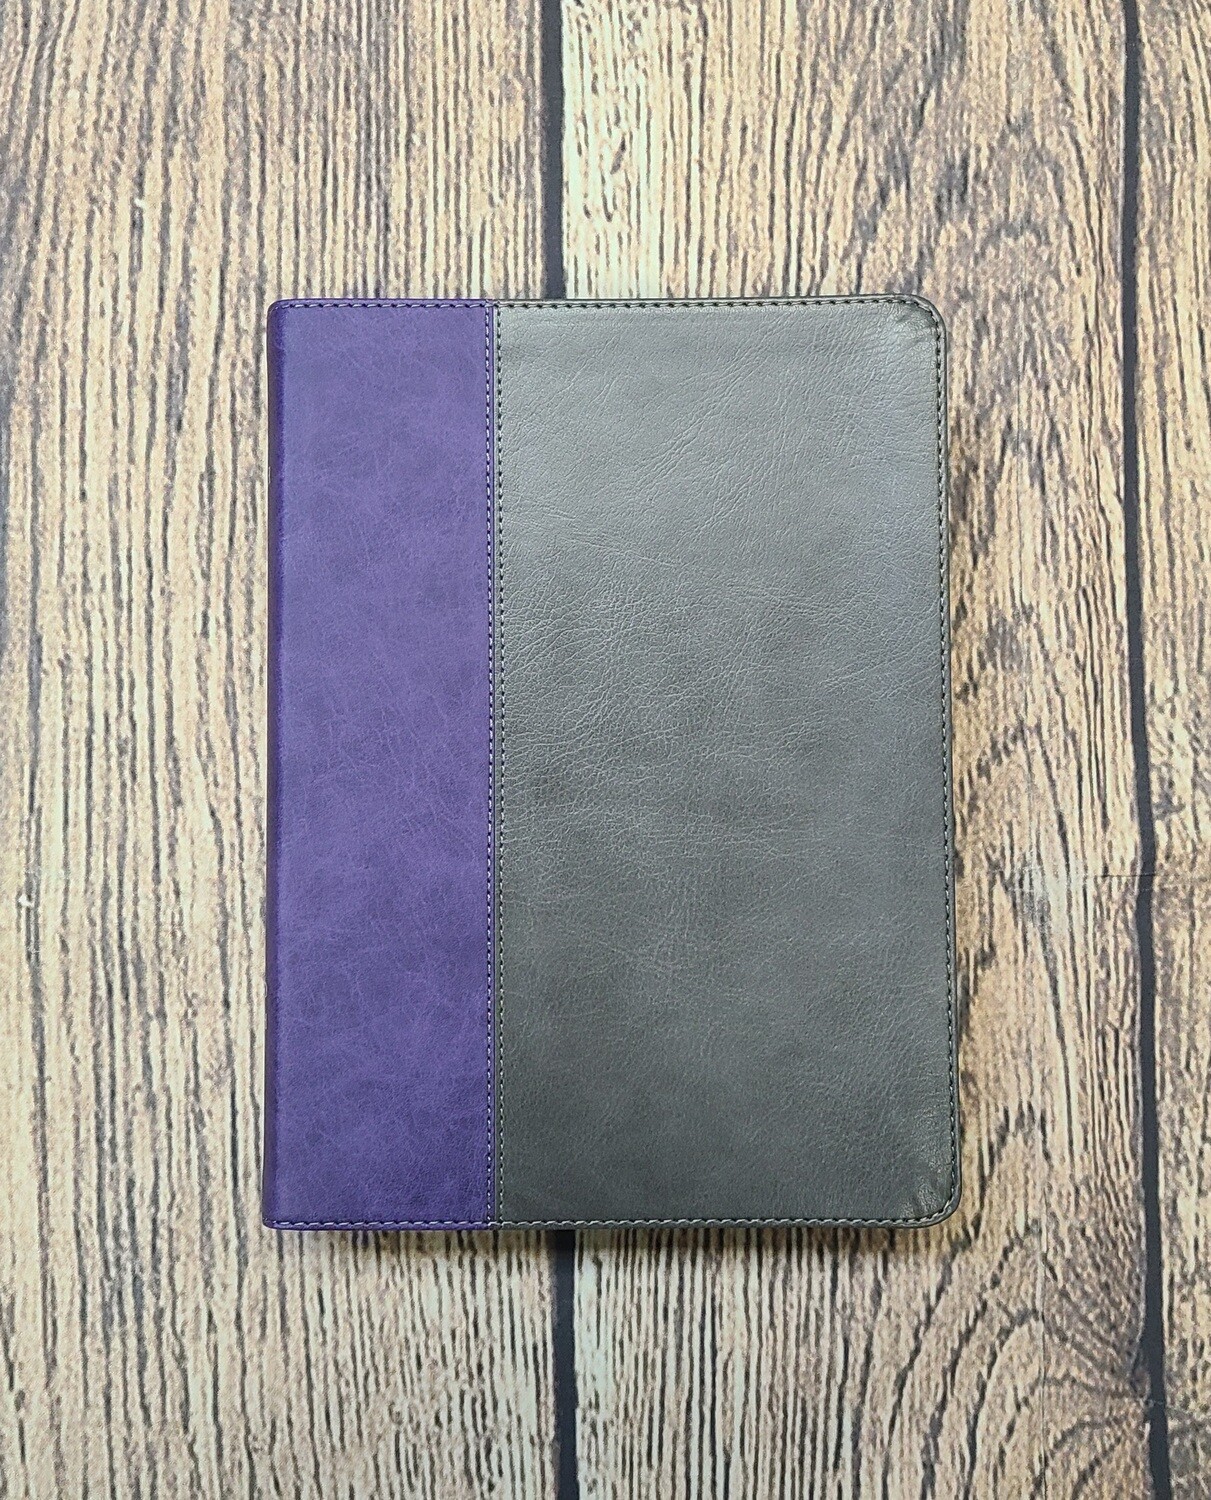 NKJV Jeremiah Study Bible - Gray and Purple Leatherluxe